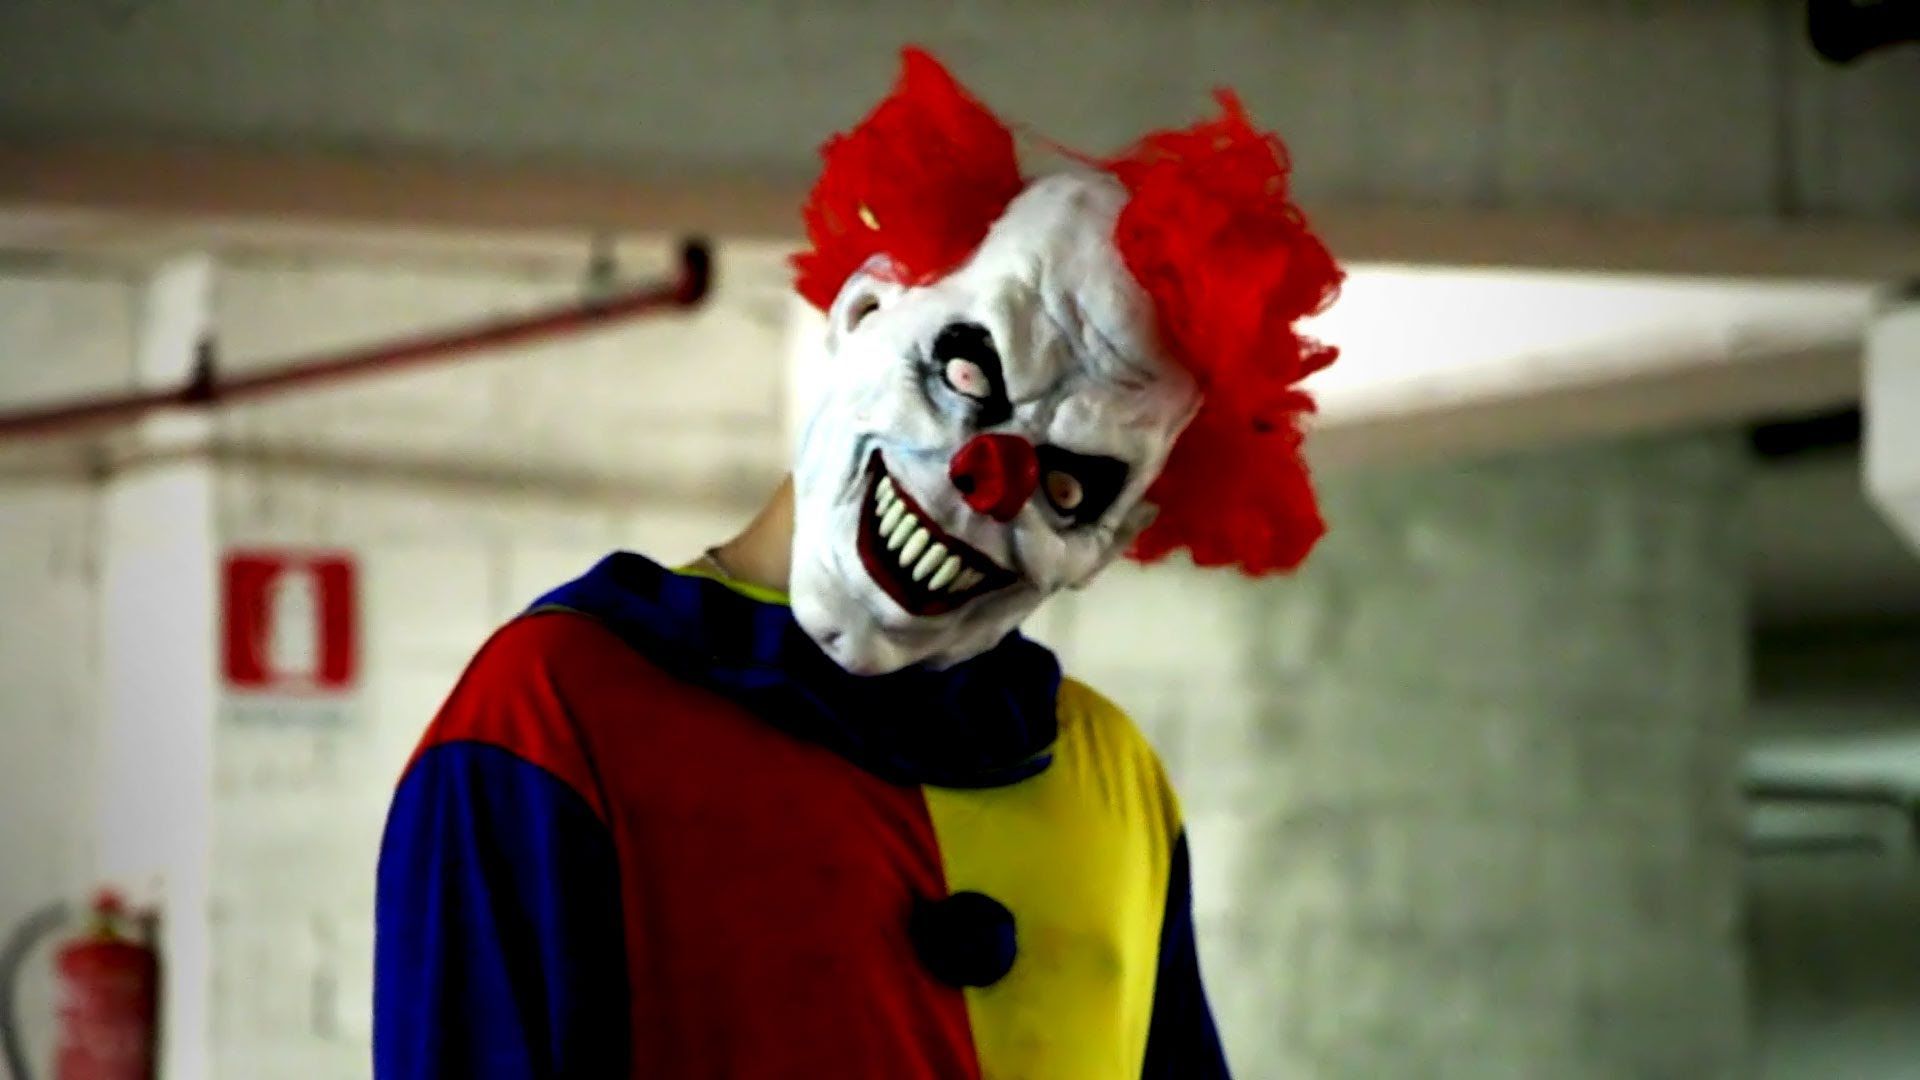 Killer Clown Returns Scare Prank! - YouTube